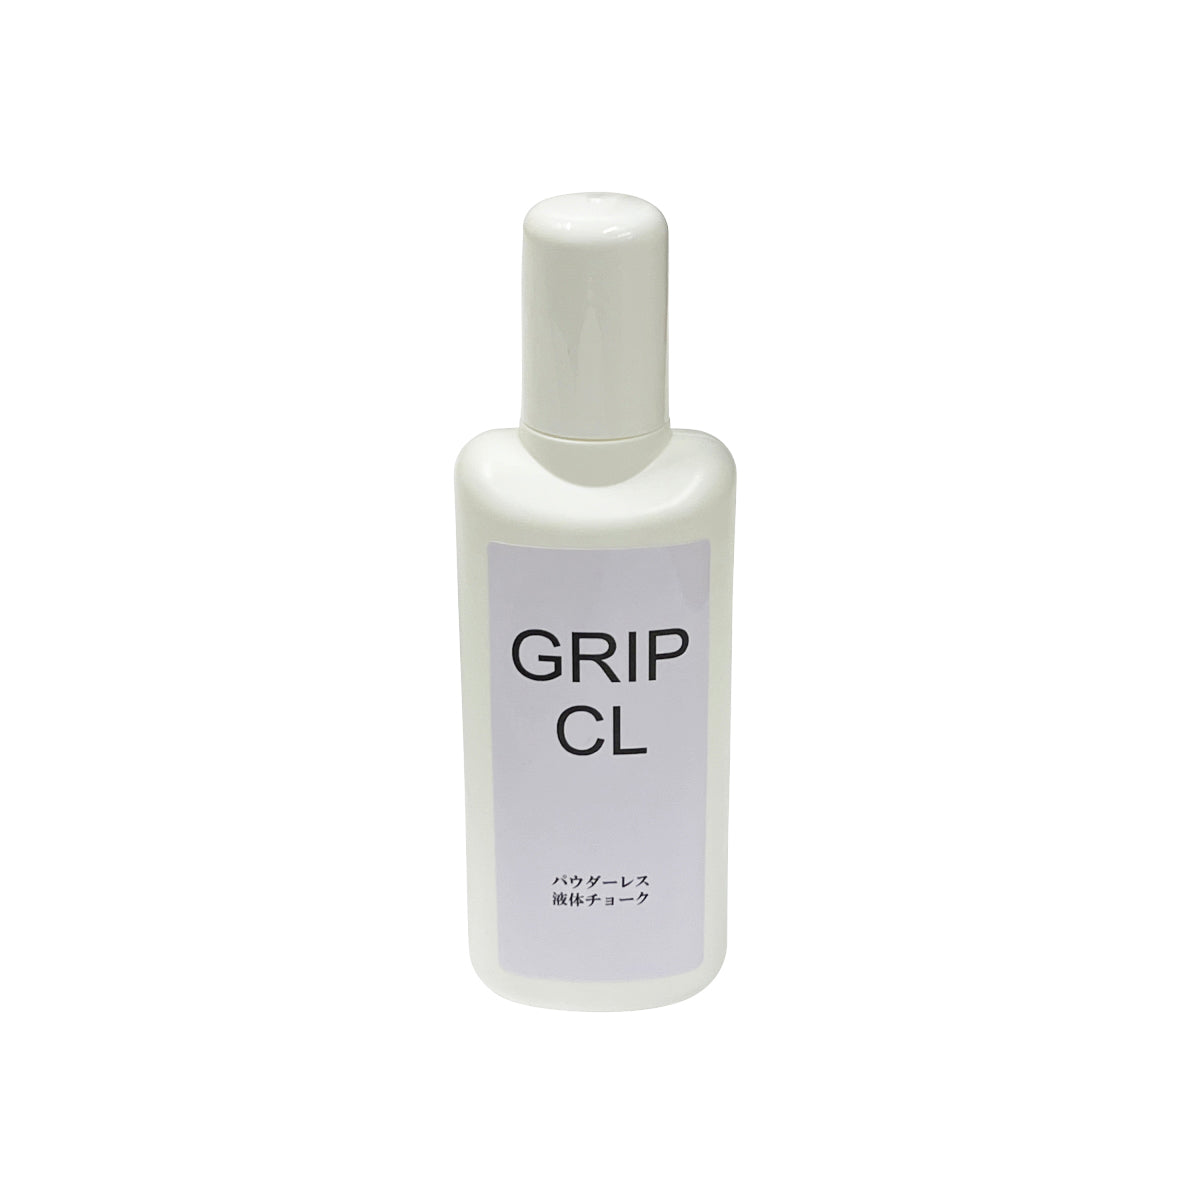 【大阪店ロッカー4】液体チョーク「GRIP CL」